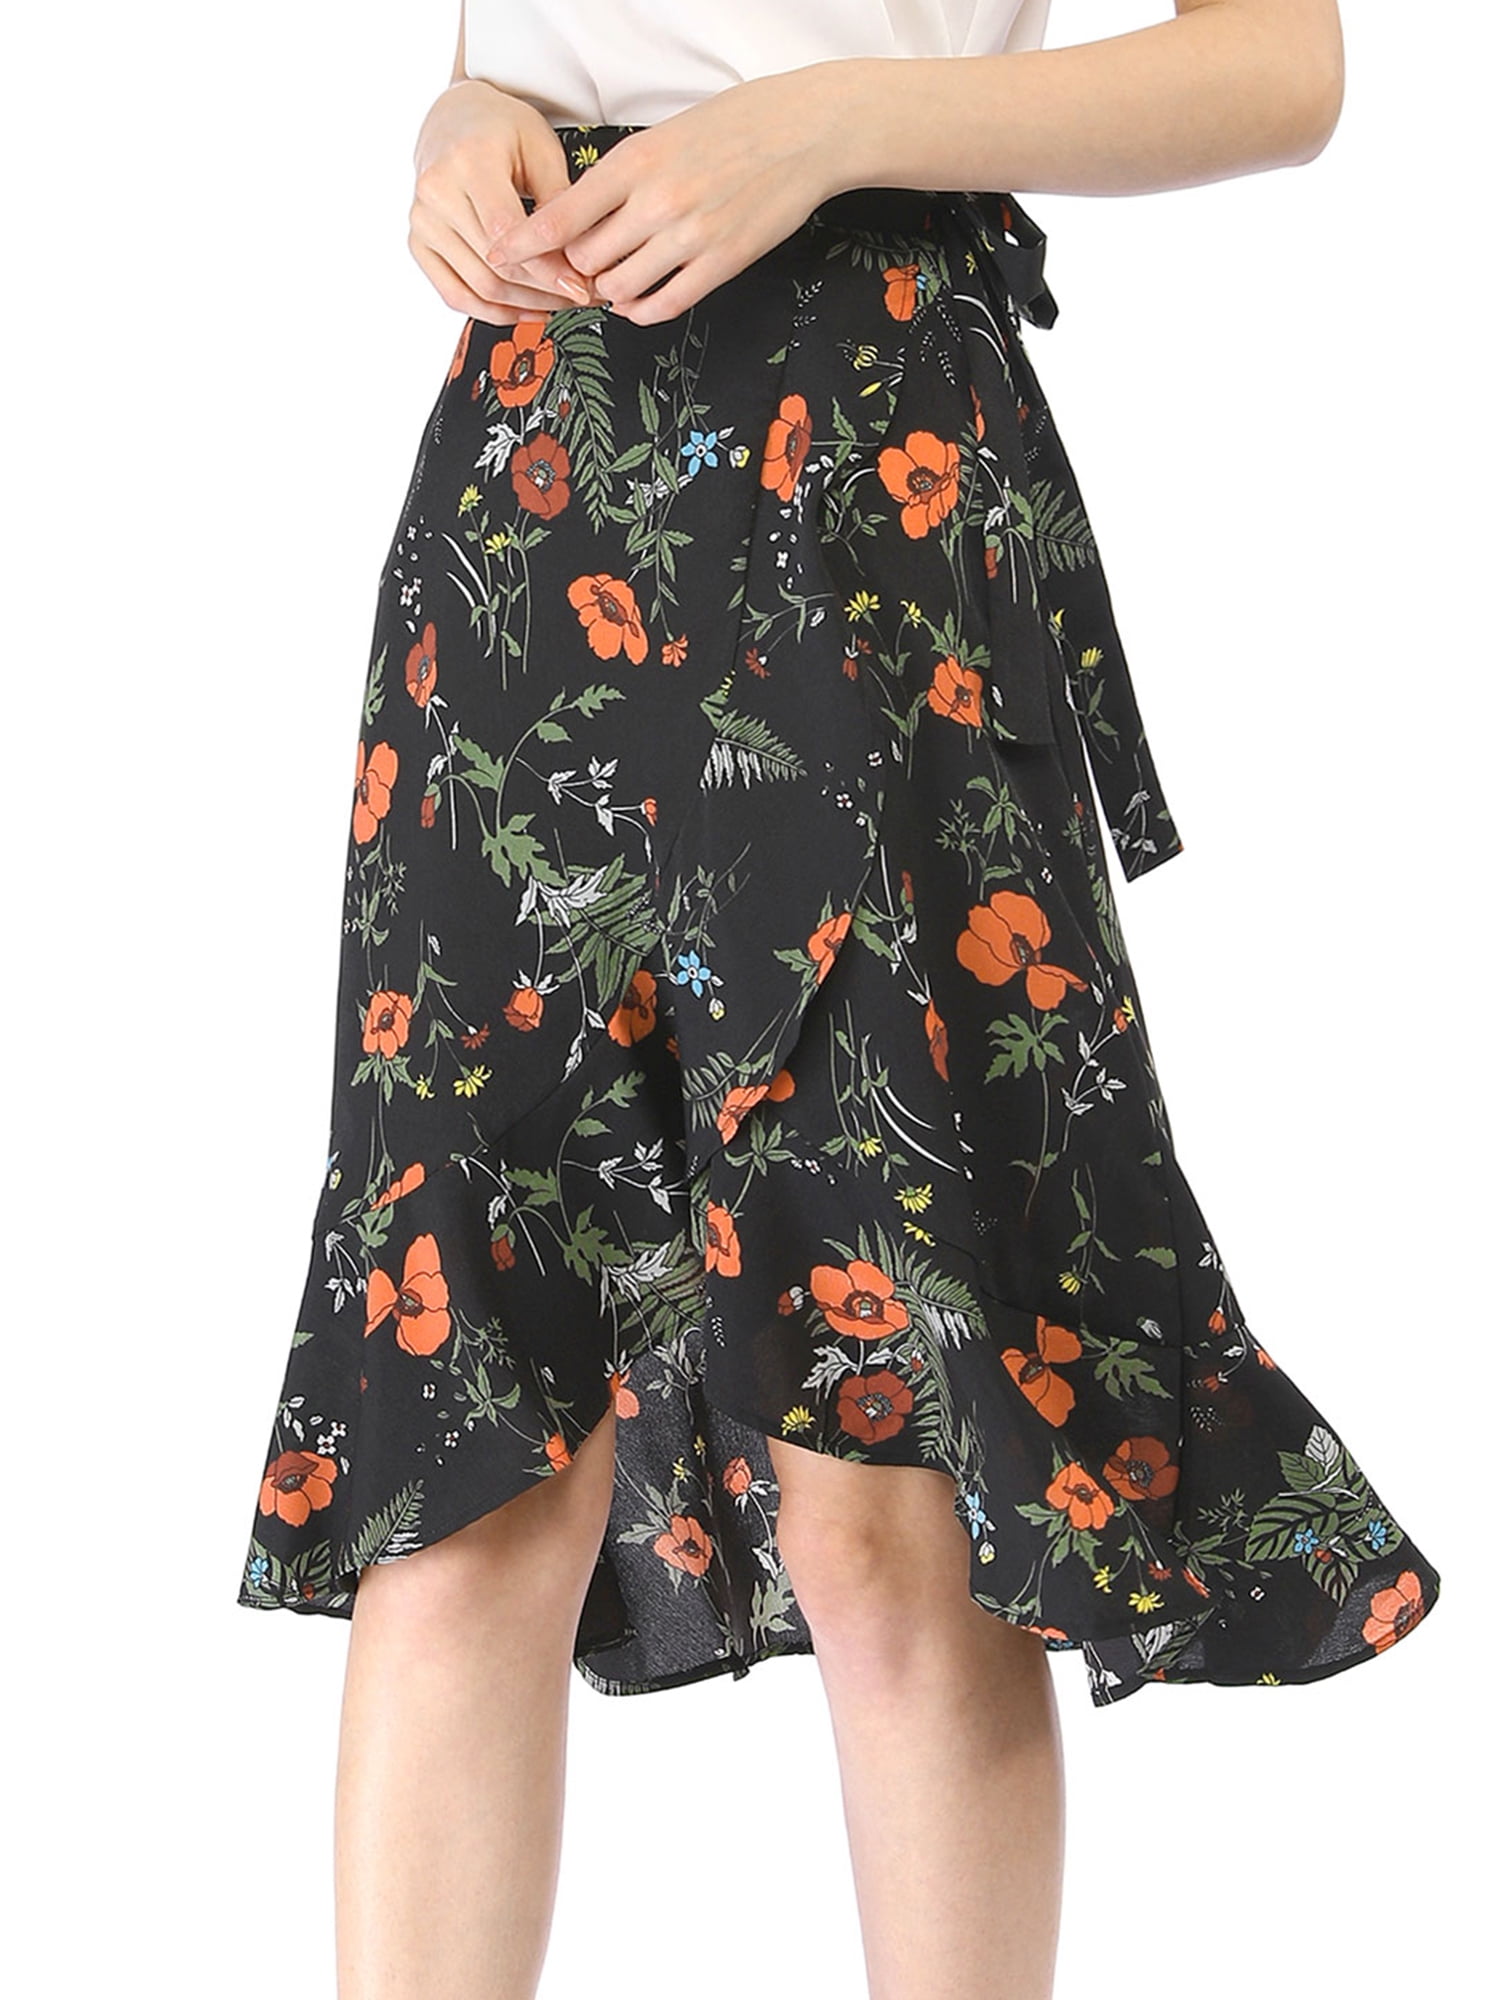 Women Ruffle Skirt Tie Waist High Low Floral Wrap Skirt Black S (US 6 ...